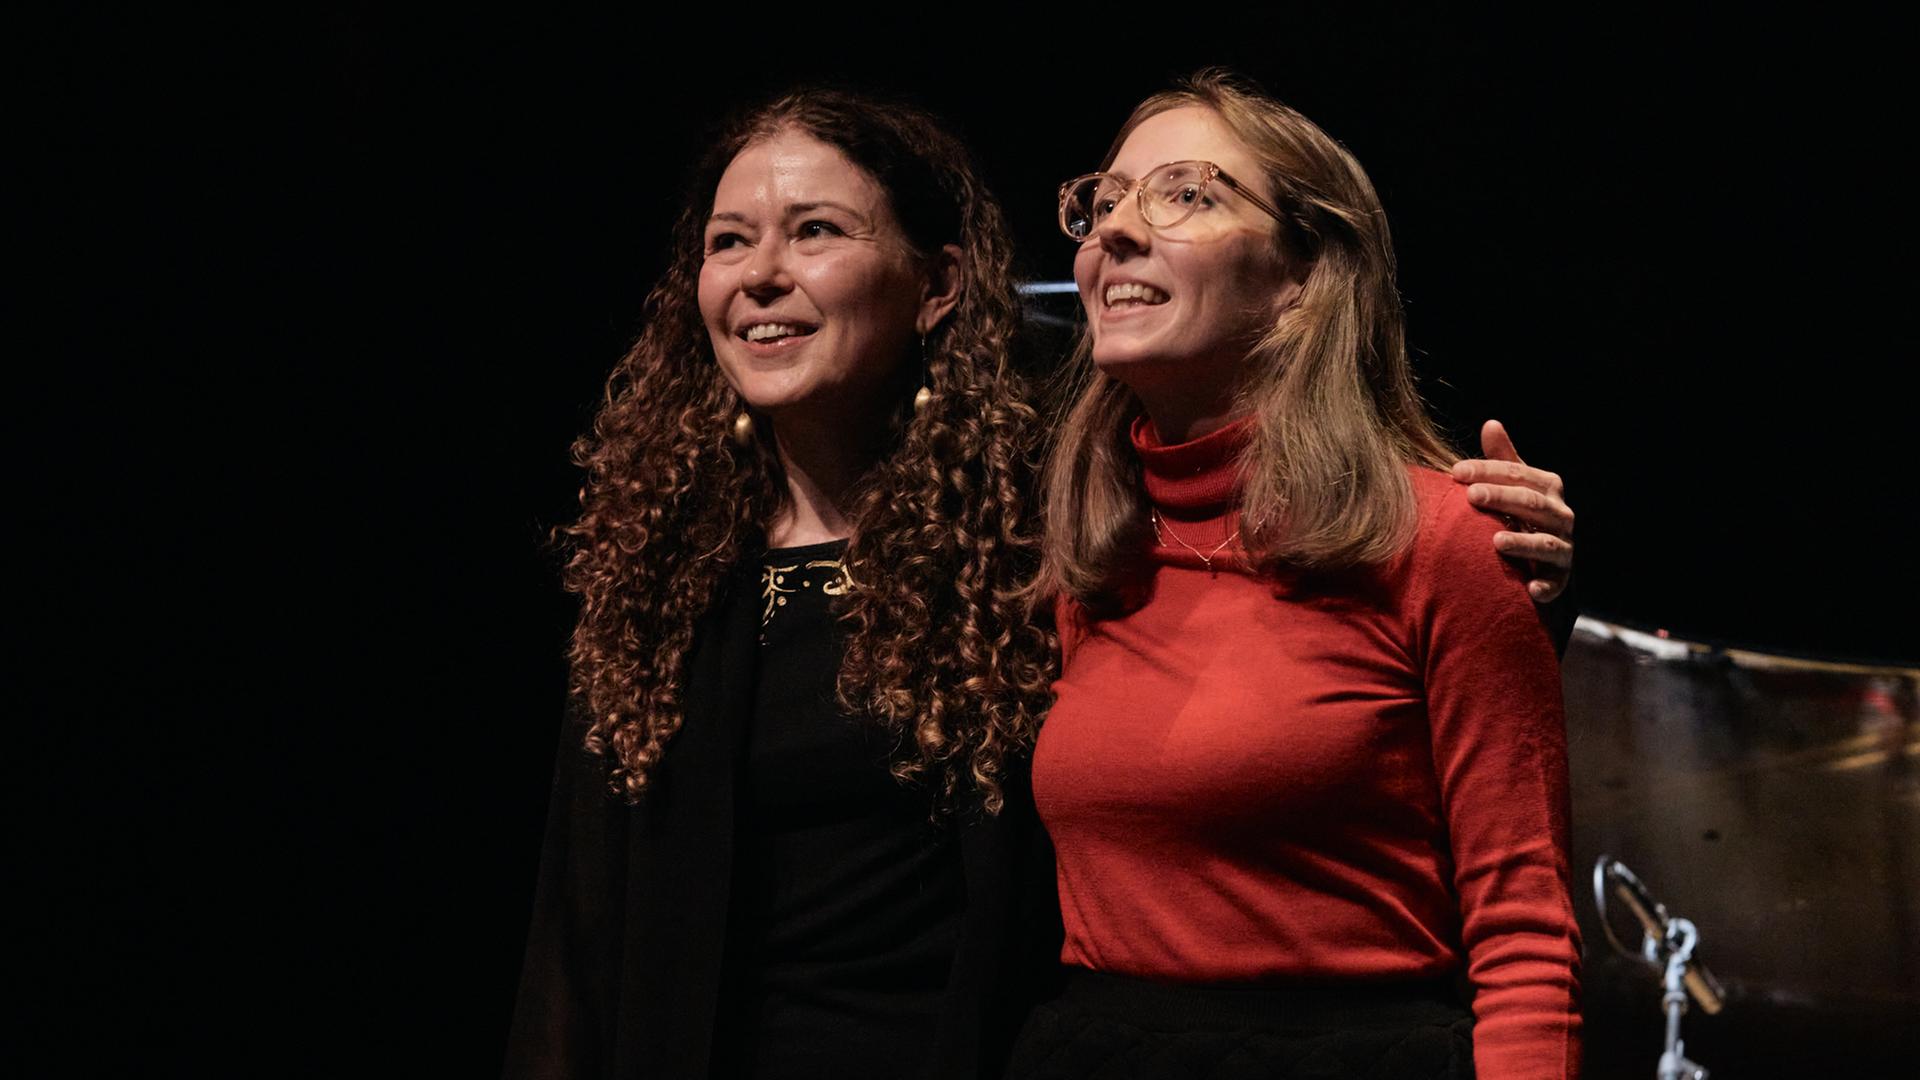 Zwei Frauen stehen eng nebeneinander auf einer dunklen Bühne und nehmen den Beifall des Publikums lächelnd entgegen.